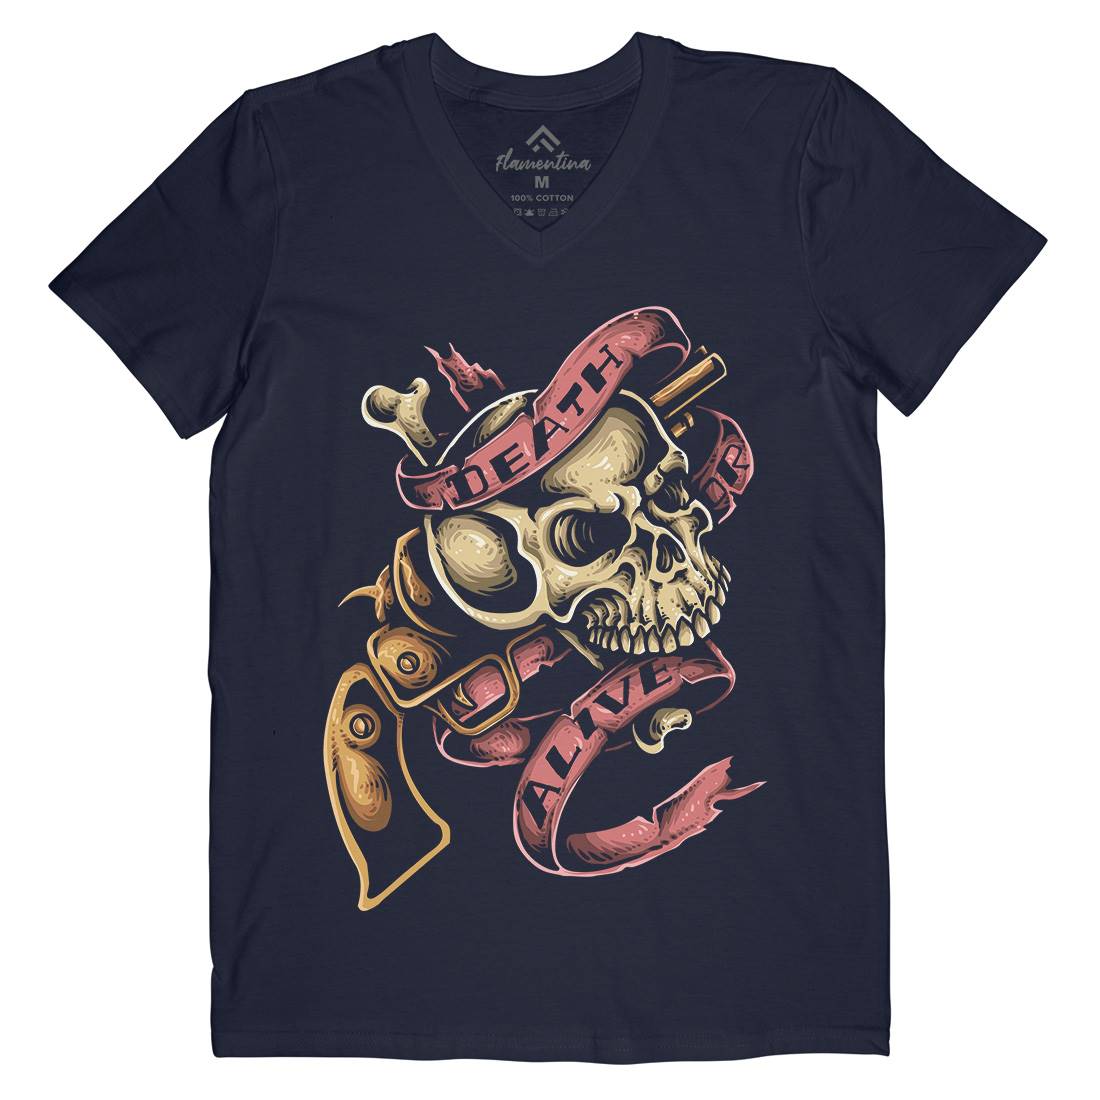 Death Or Alive Mens V-Neck T-Shirt Navy A416